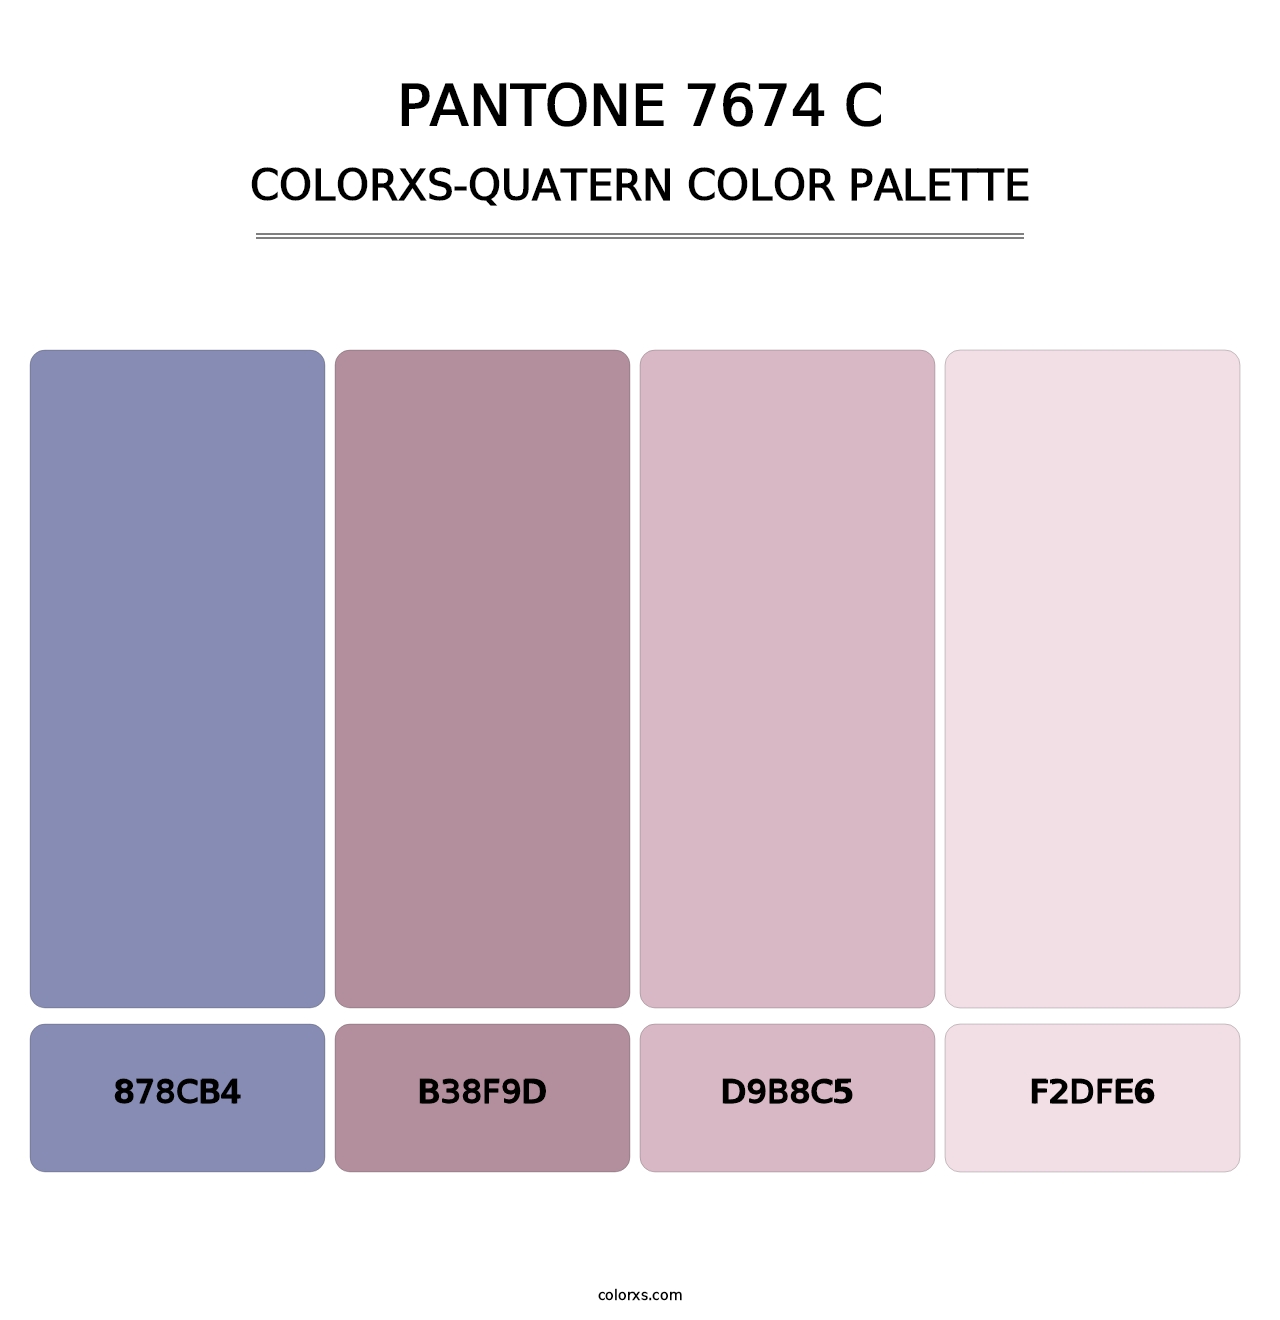 PANTONE 7674 C - Colorxs Quatern Palette